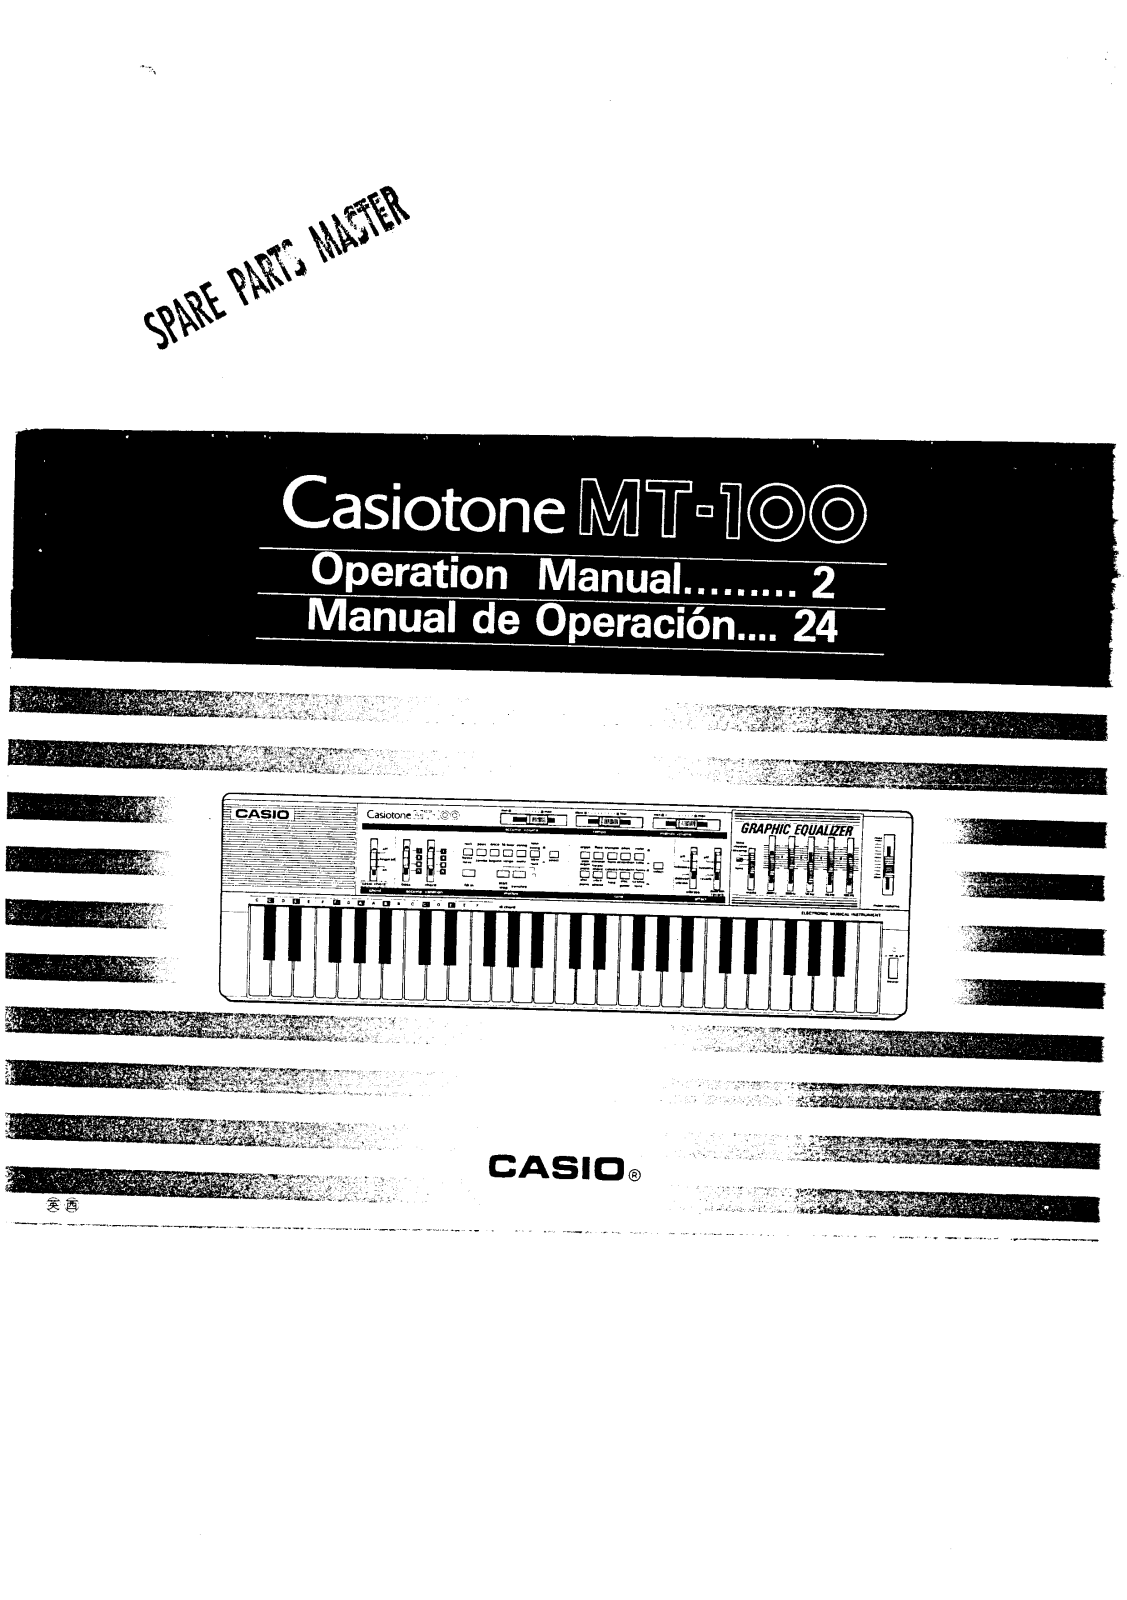 Casio MT-100 User Manual